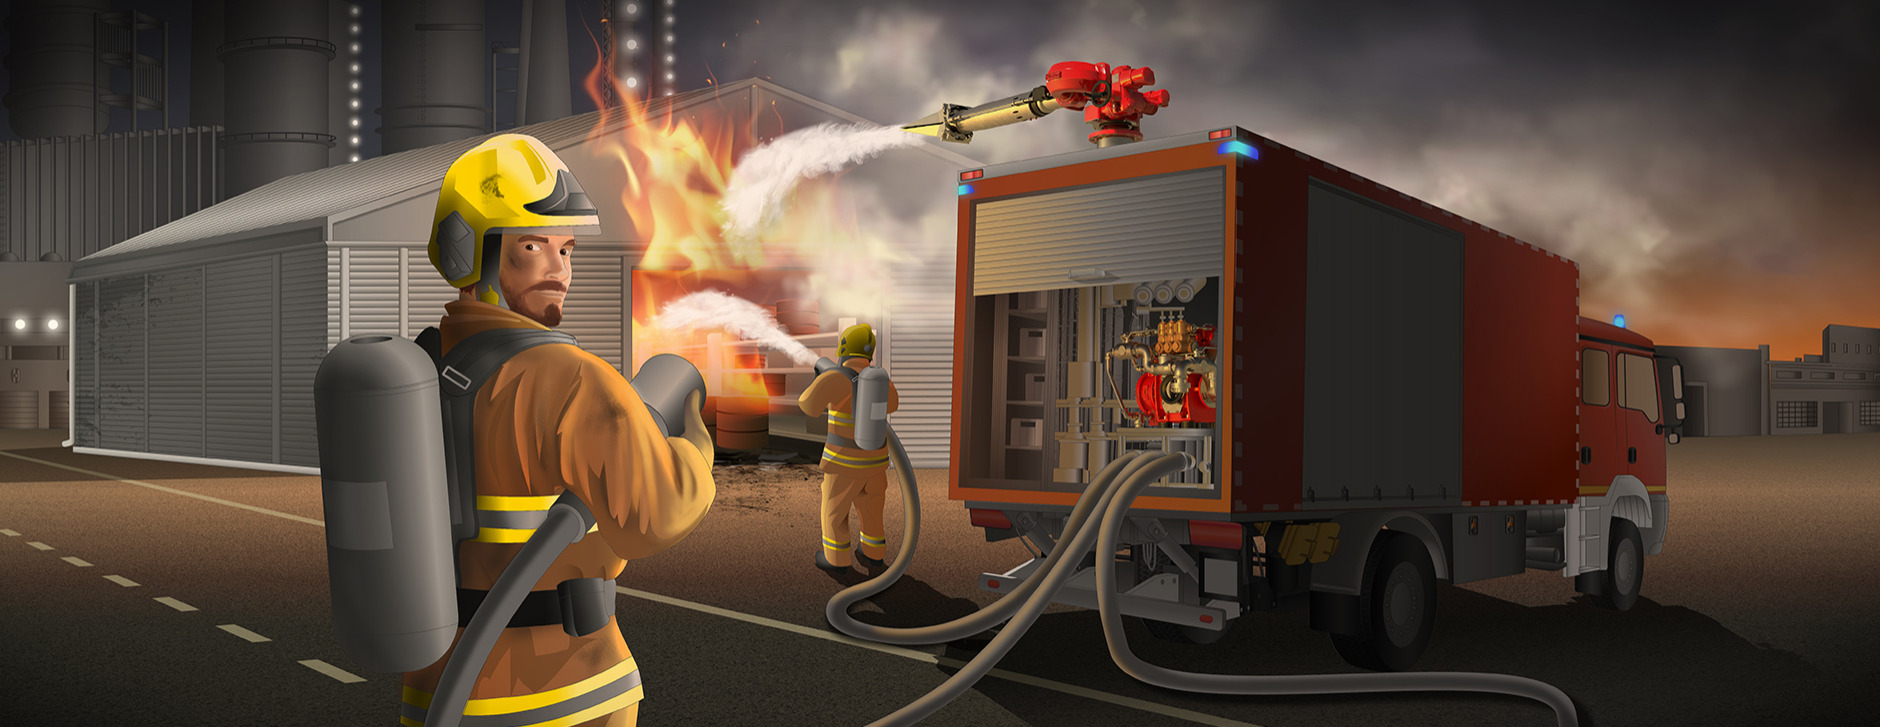 Zumischsysteme für Feuerwehrfahrzeuge